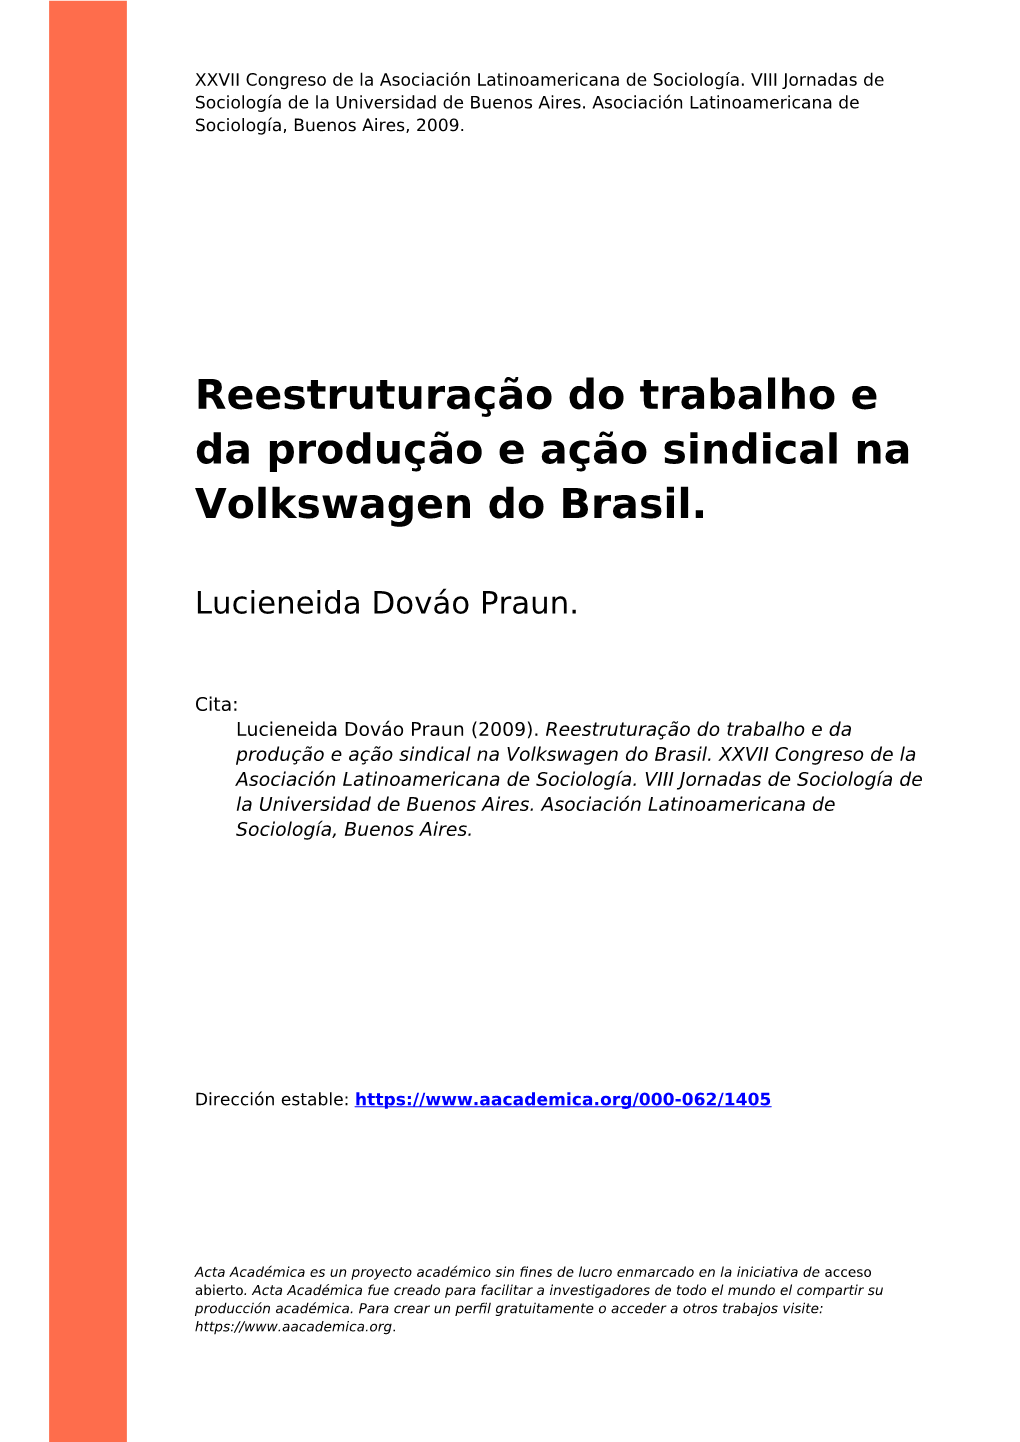 Reestruturação Do Trabalho E Da Produção E Ação Sindical Na Volkswagen Do Brasil